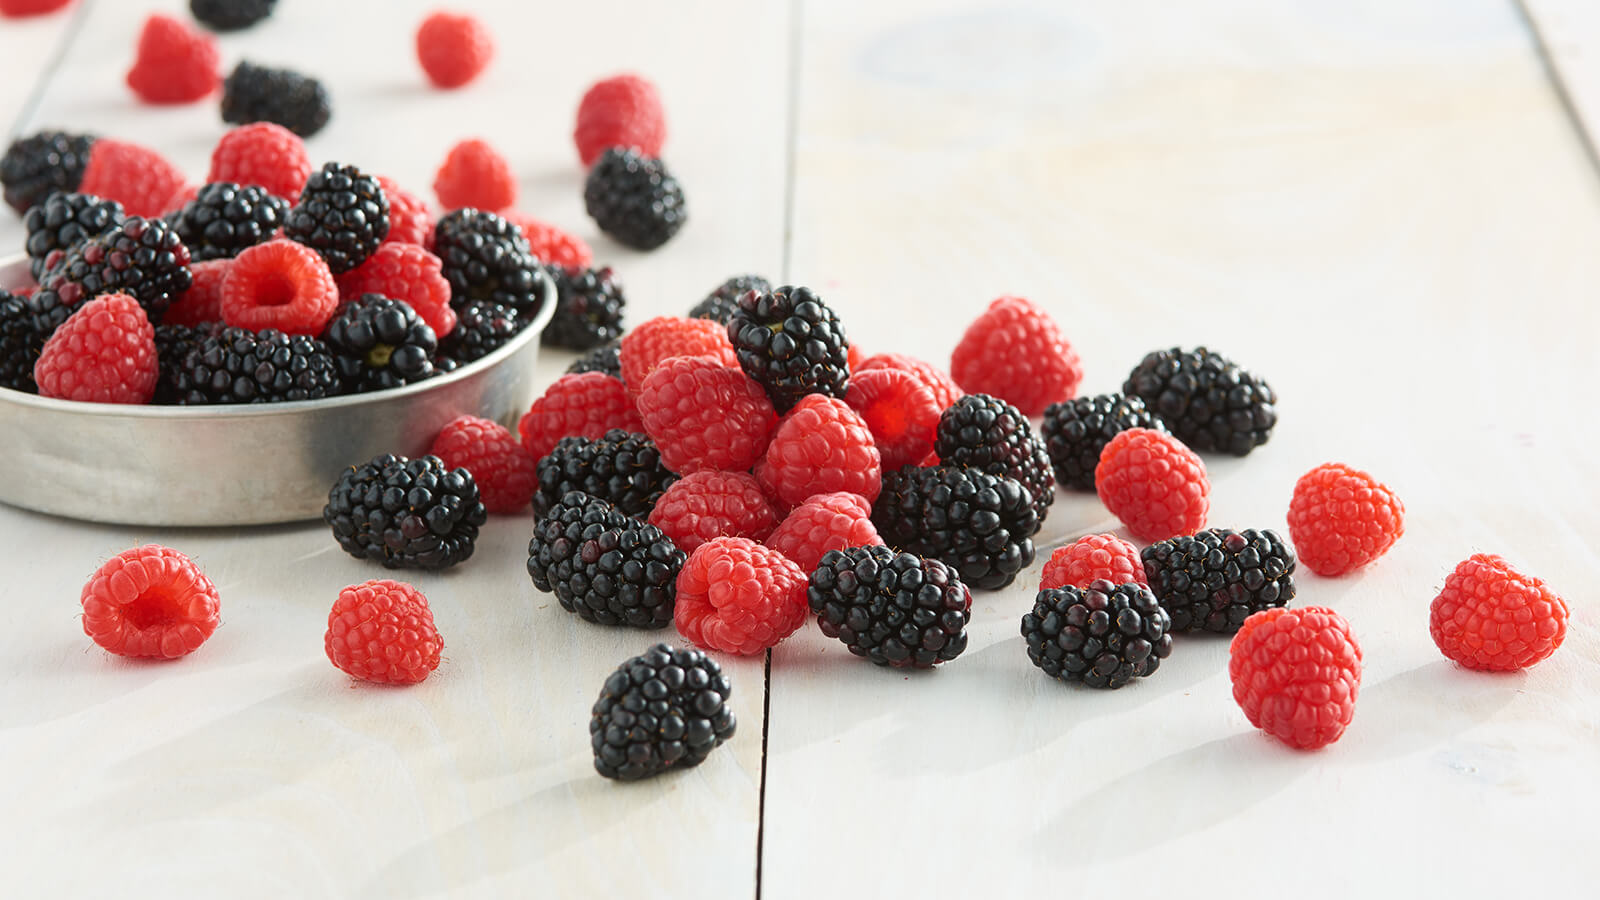 blackberries and raspberries